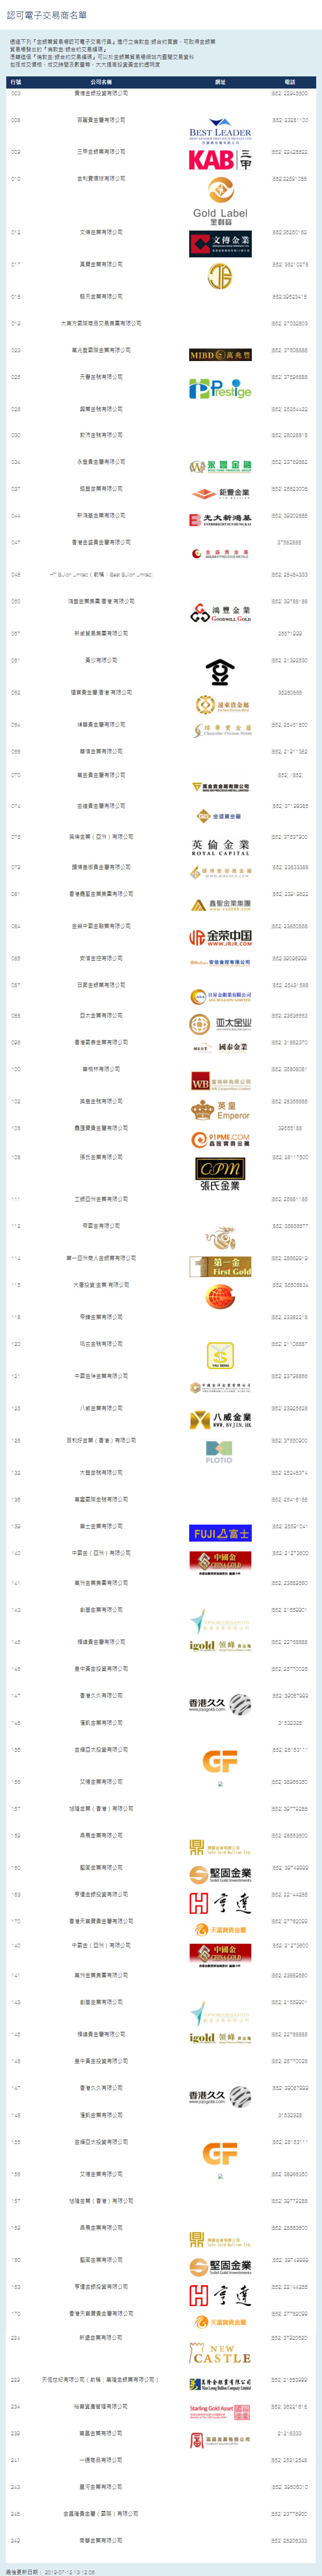 香港金银业贸易场电子交易商名单